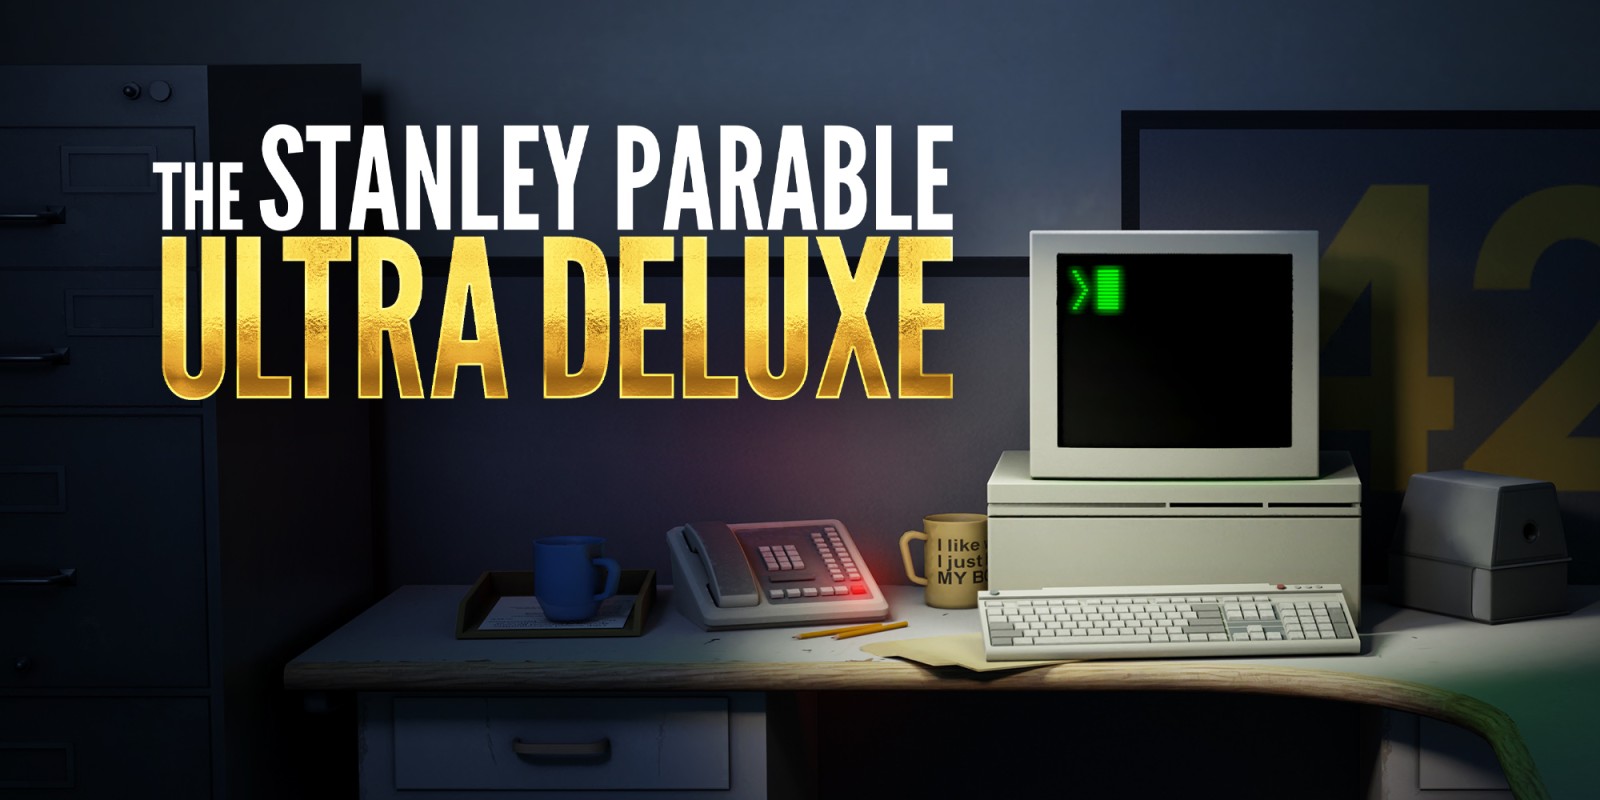 Öffnen Sie die Türen der Fantasie: Tauchen Sie ein in die Welt der Stanley-Parabel